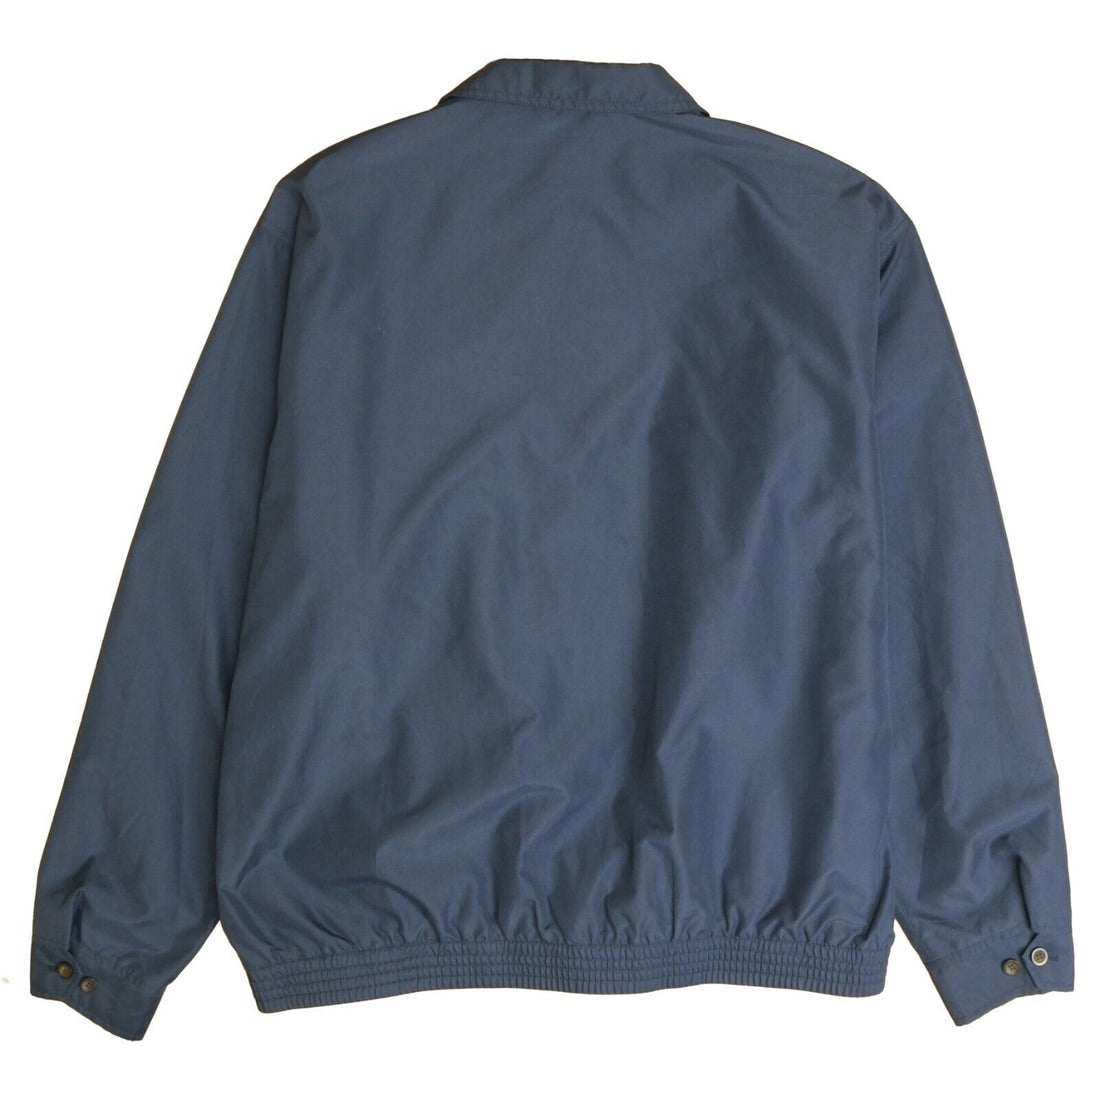 Chaps Harrington Jacket Size XL Blue